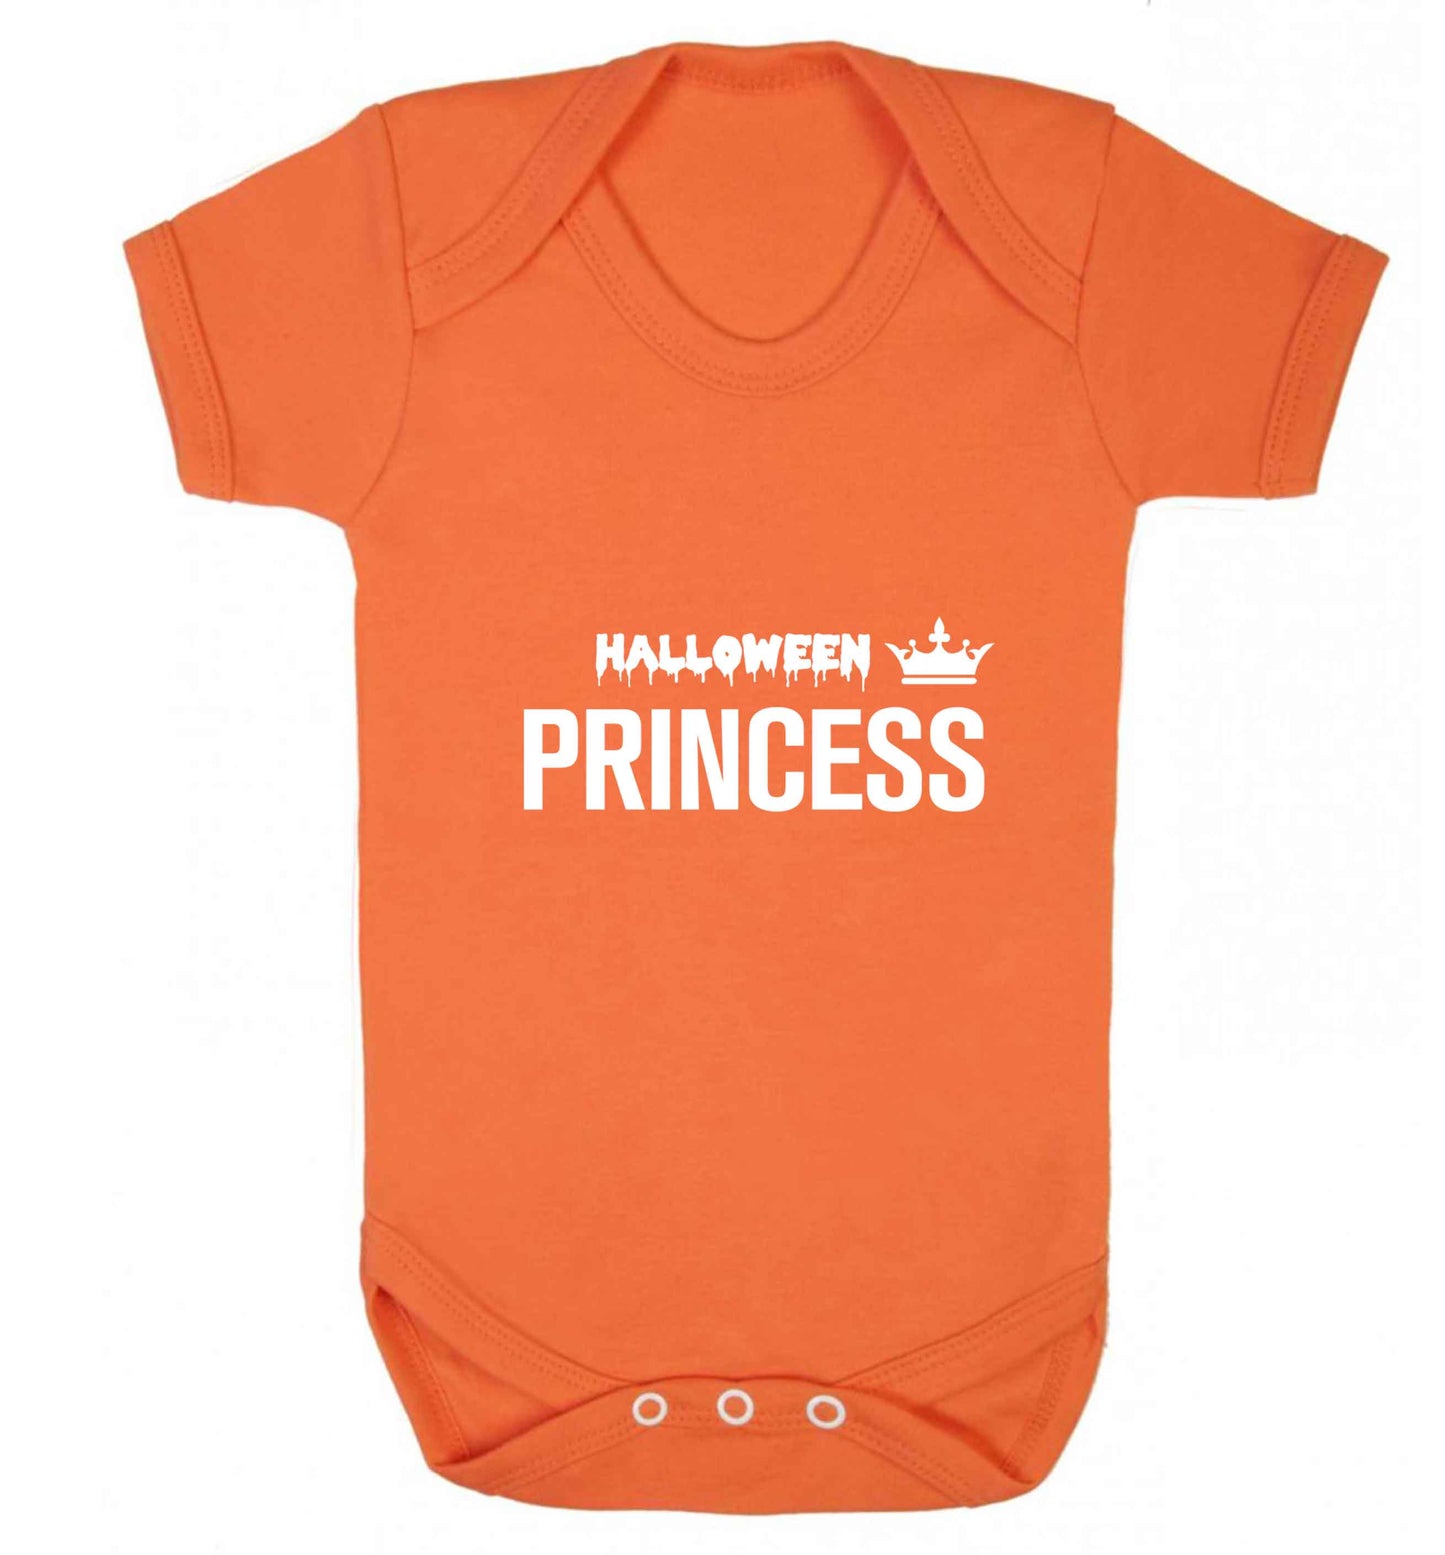 Halloween princess baby vest orange 18-24 months